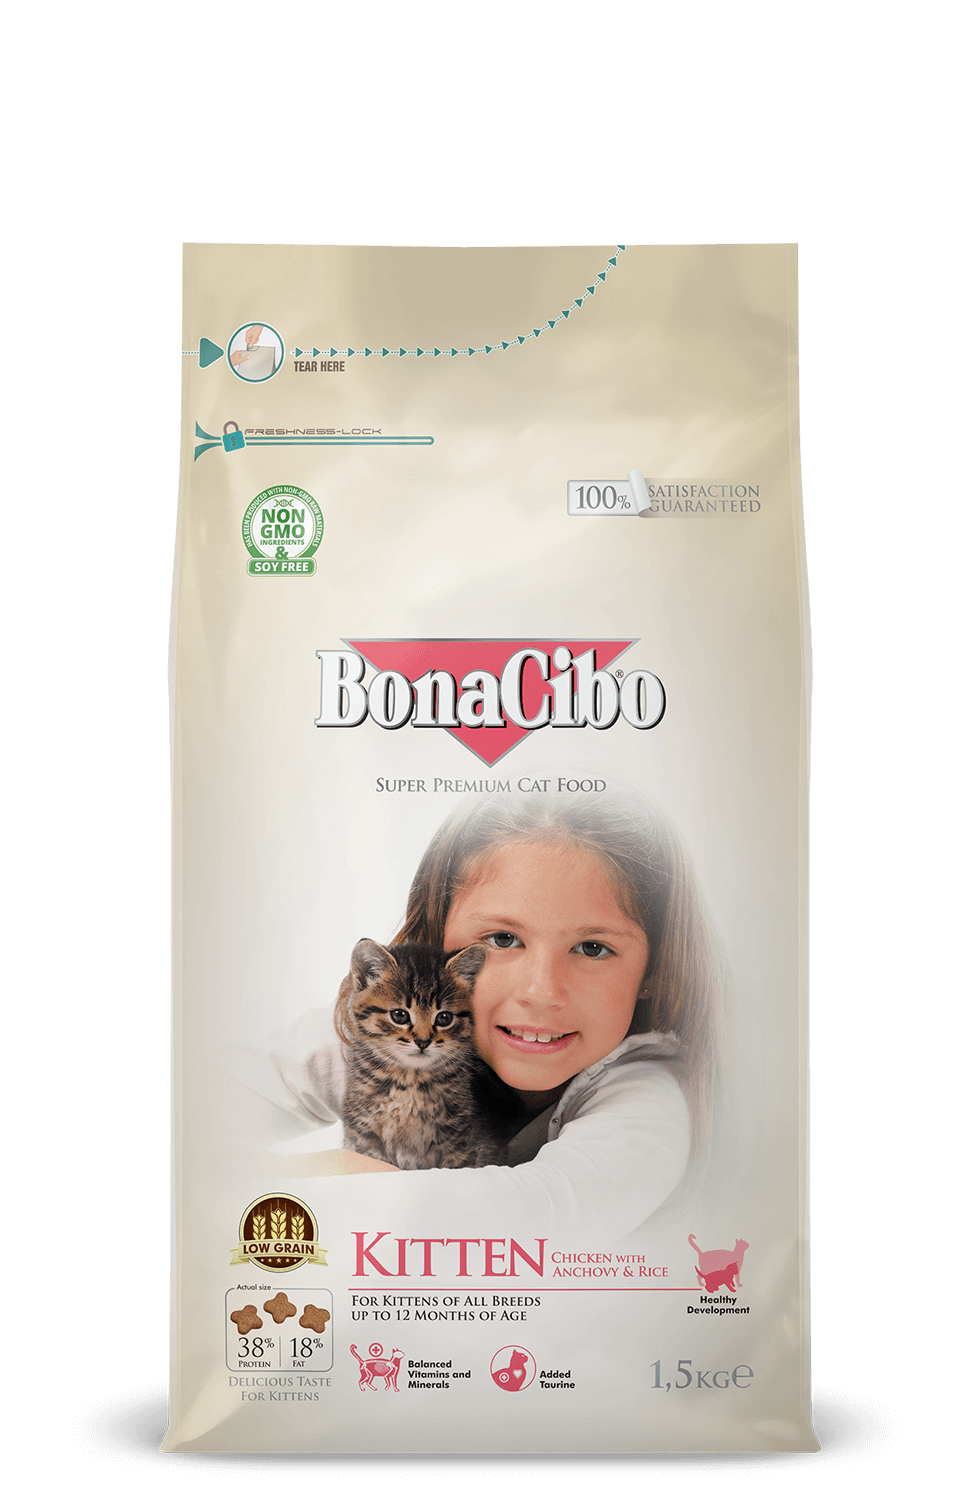 bonacibo kitten tavuklu bonacibo cat dog food